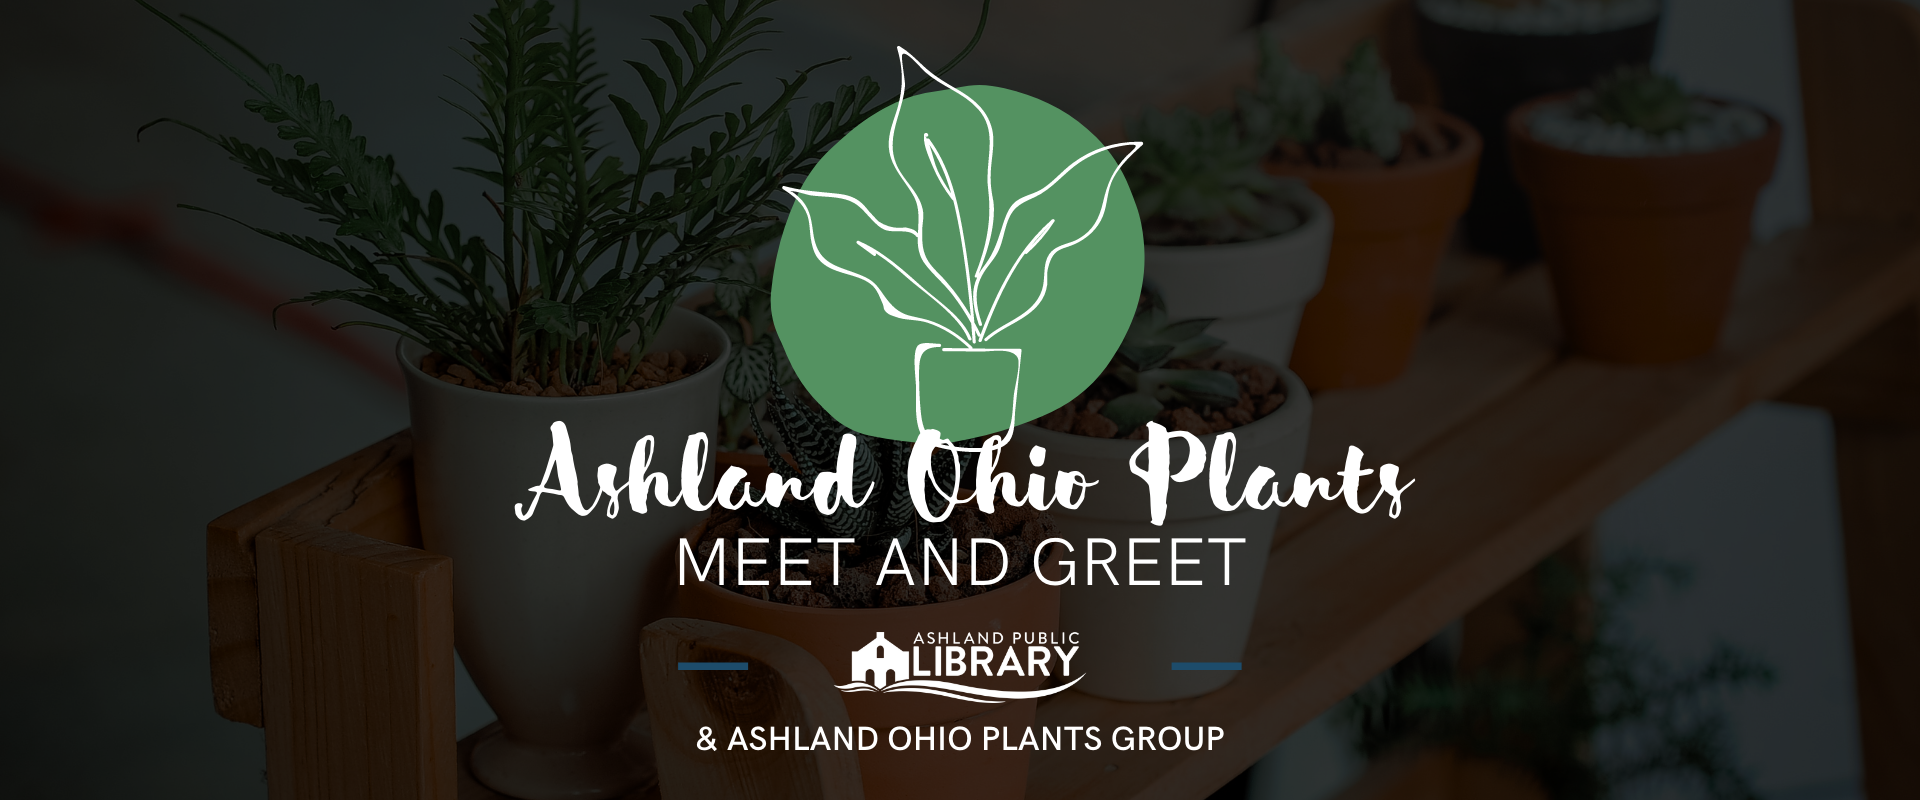 Ashland Ohio Plants 